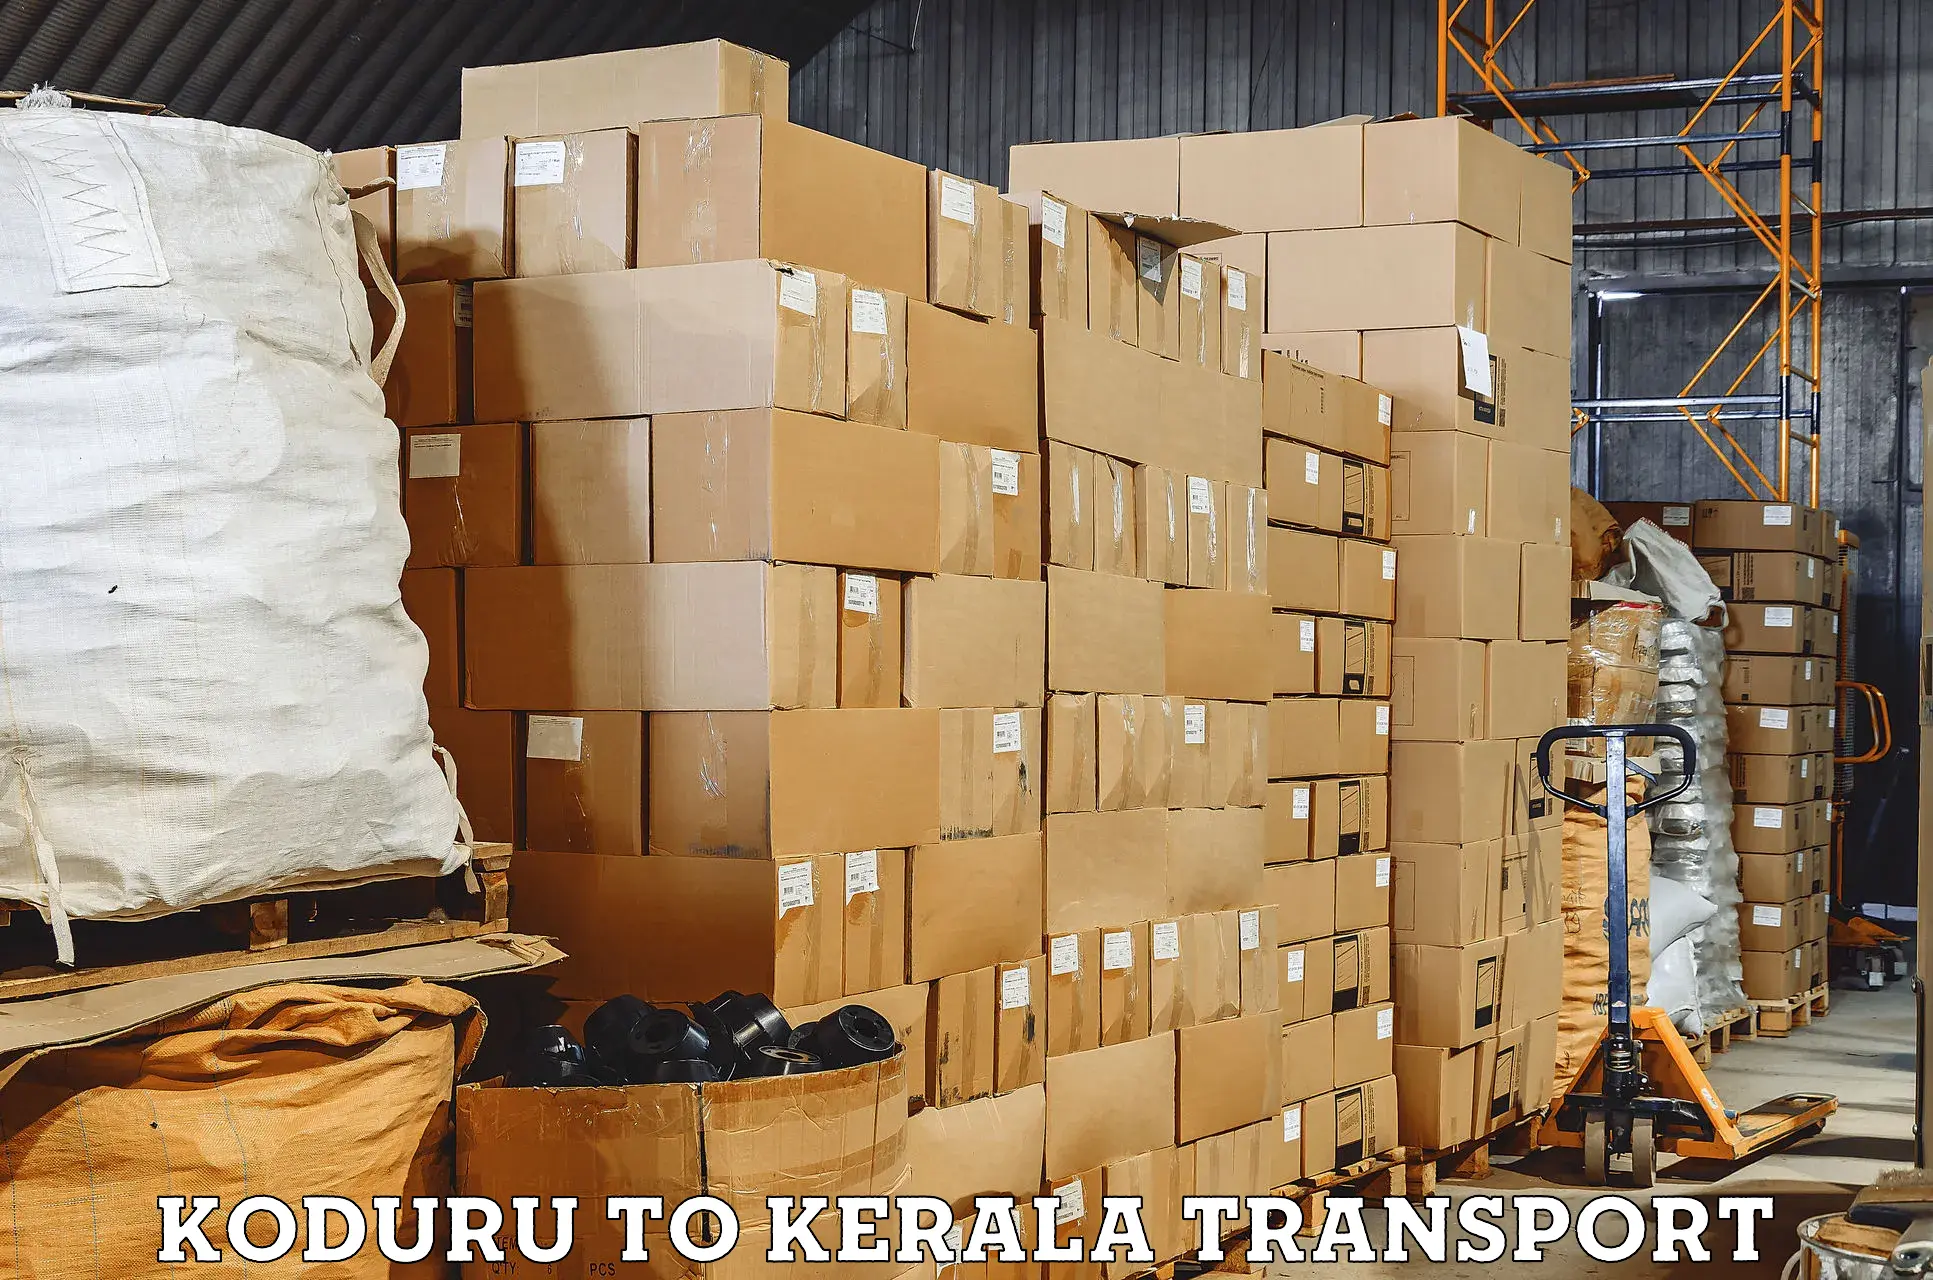 Interstate transport services Koduru to Manjeshwar